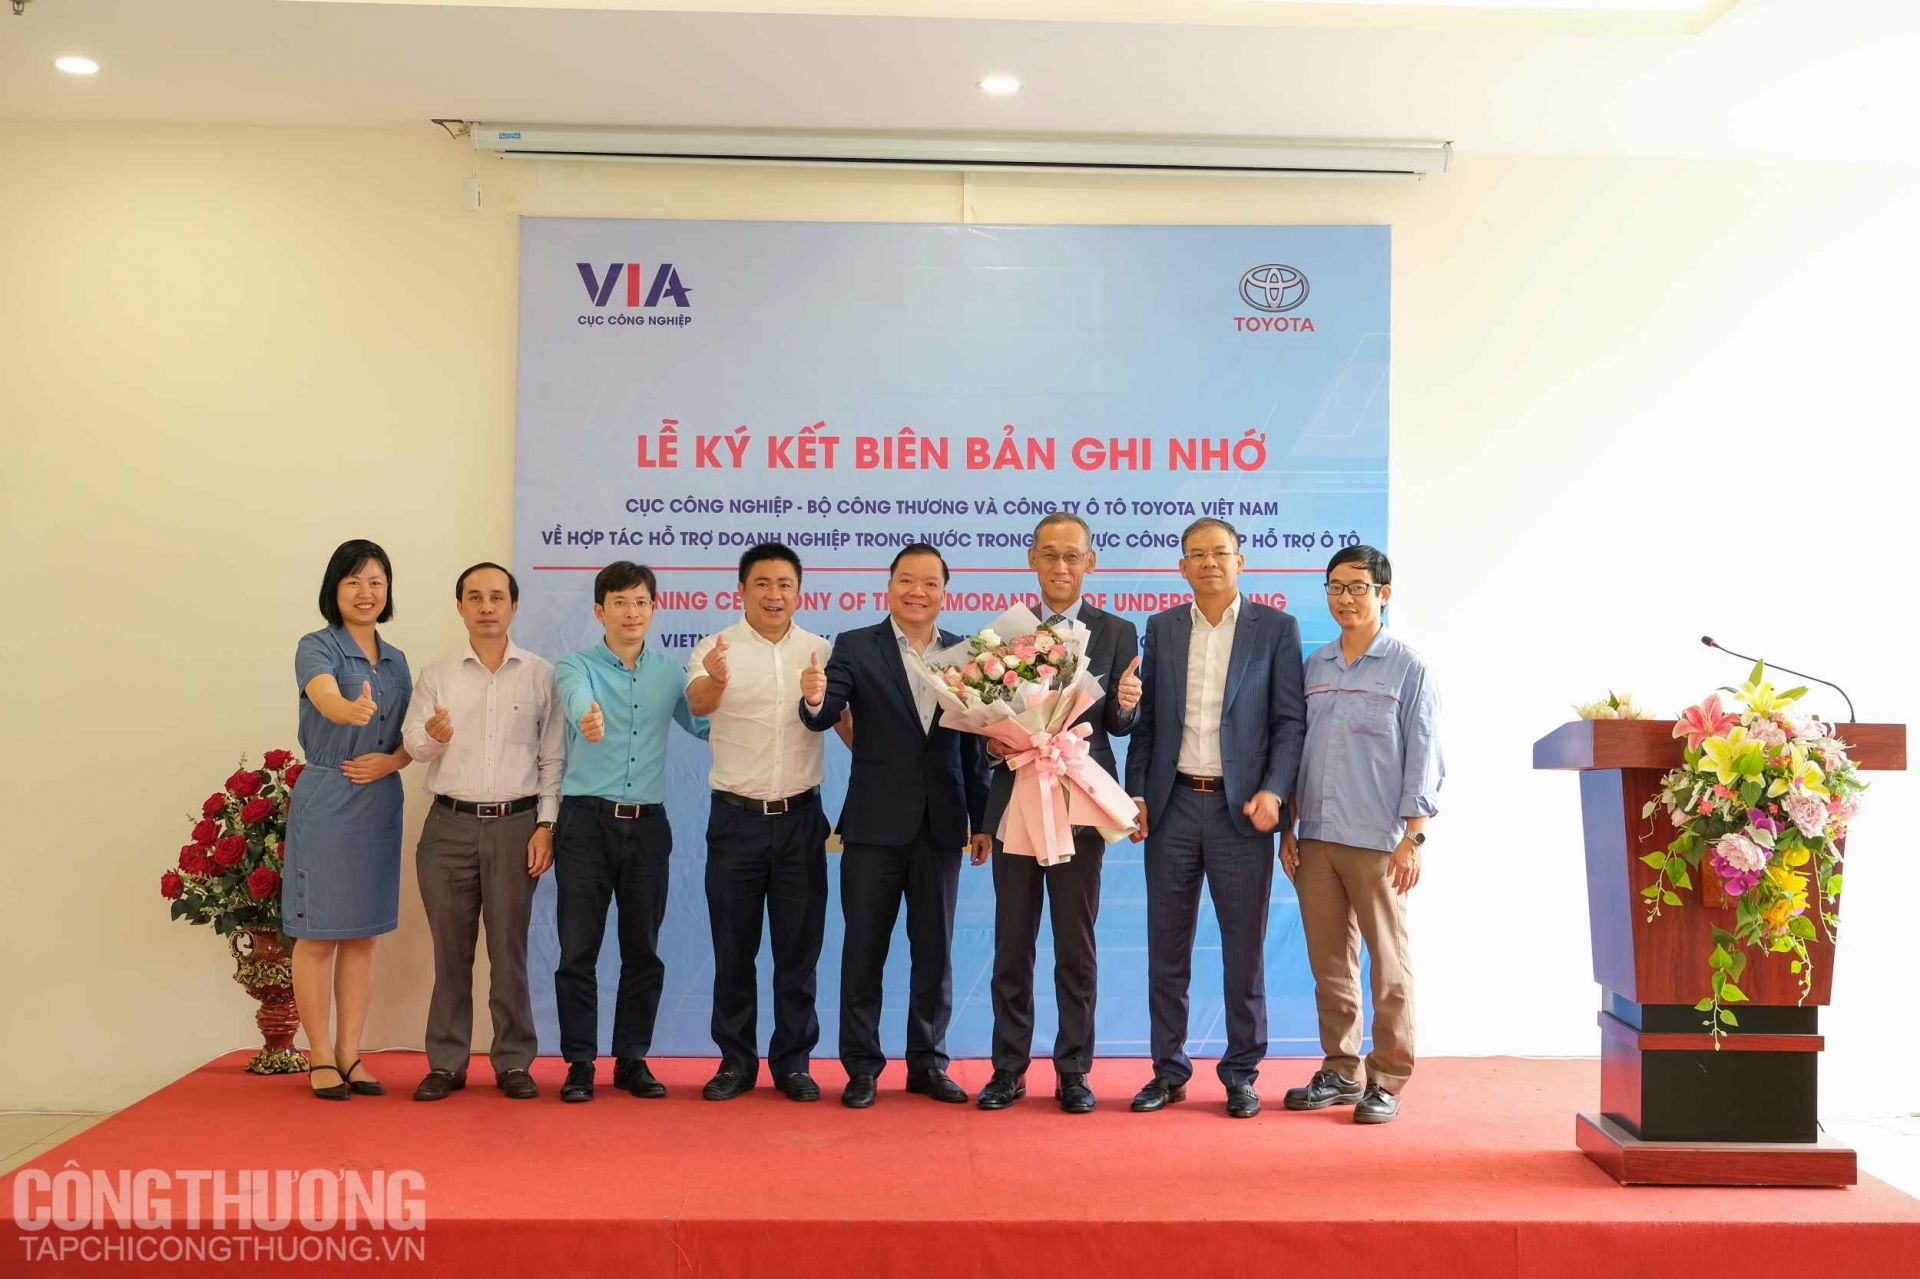 Cục Công nghiệp, Bộ Công Thương và Công ty Ô tô Toyota Việt Nam phối hợp tổ chức Lễ ký kết Biên bản ghi nhớ về việc hợp tác hỗ trợ doanh nghiệp trong nước trong lĩnh vực công nghiệp hỗ trợ ô tô.